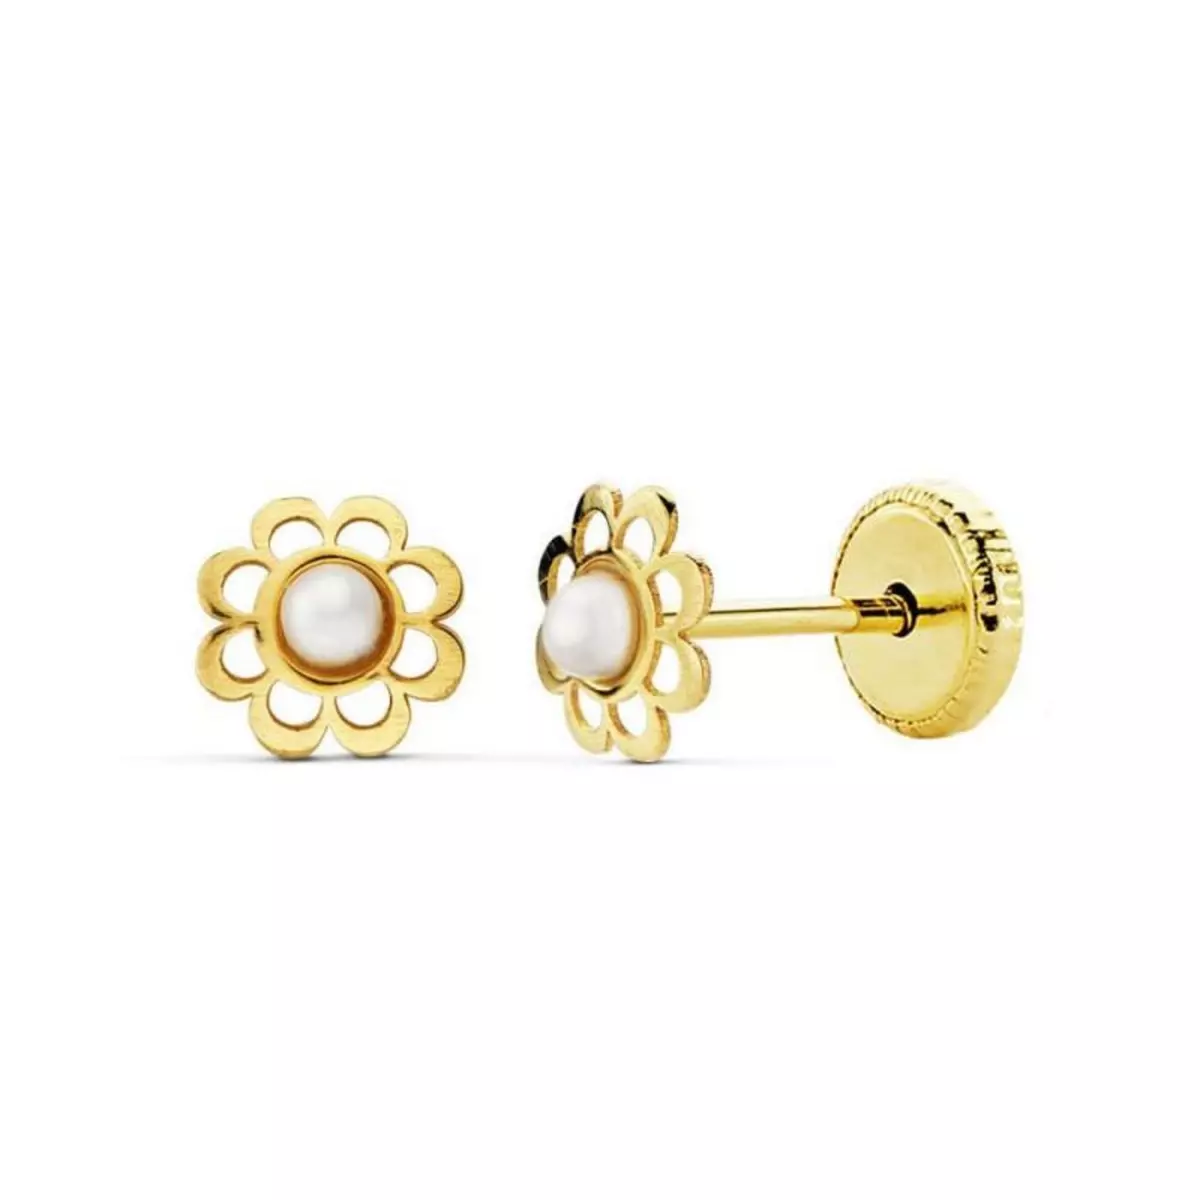 L'ATELIER D'AZUR Boucles d'Oreilles Or 18 Carats 750/000 Jaune - Perles de Culture - Motif Fleur